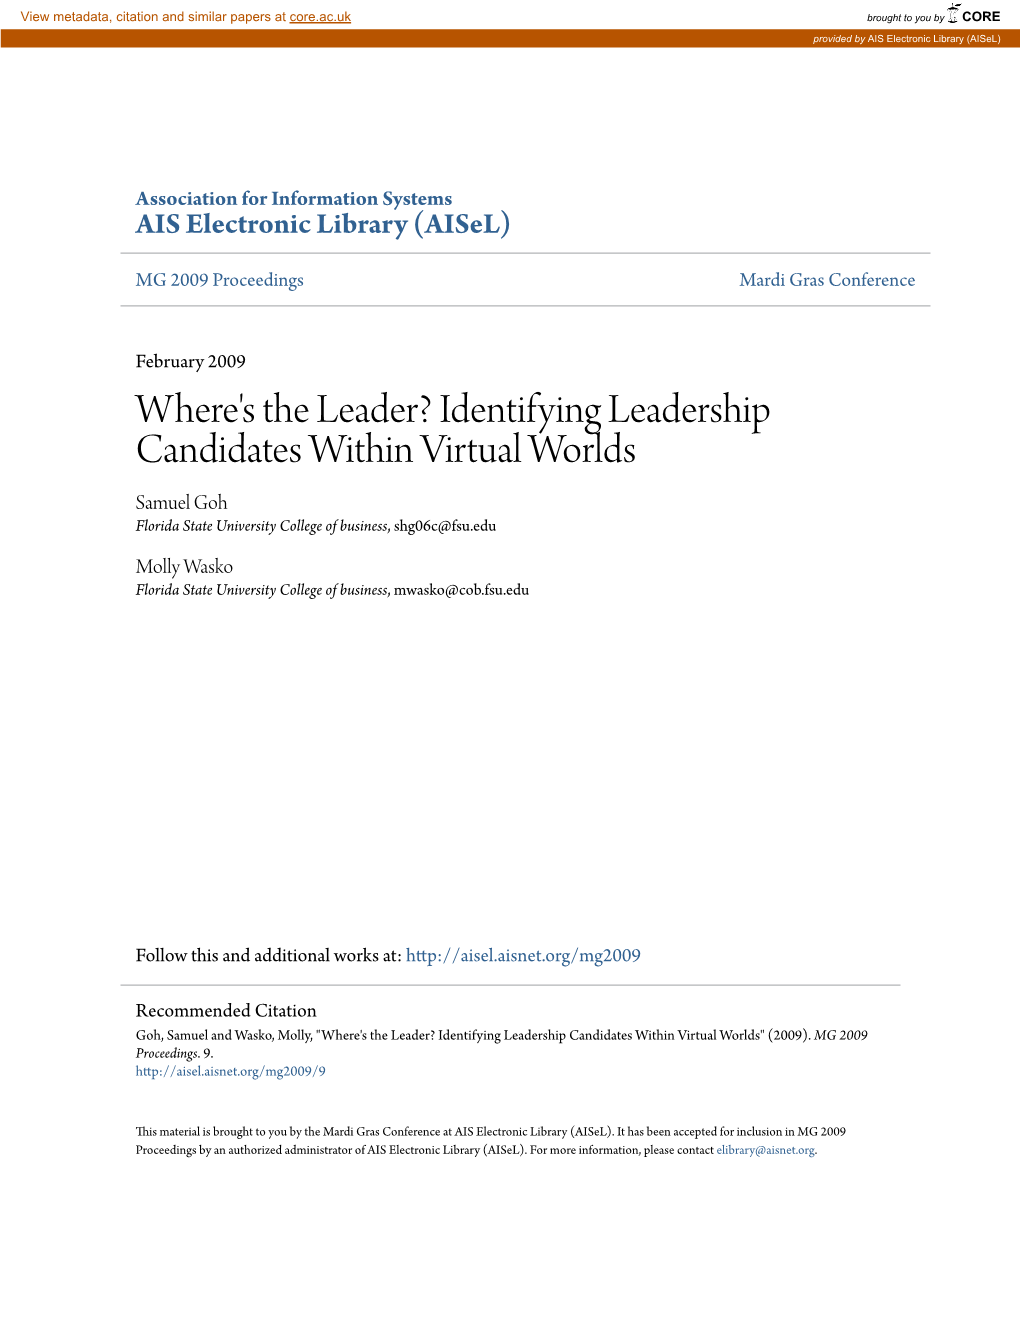 Identifying Leadership Candidates Within Virtual Worlds Samuel Goh Florida State University College of Business, Shg06c@Fsu.Edu